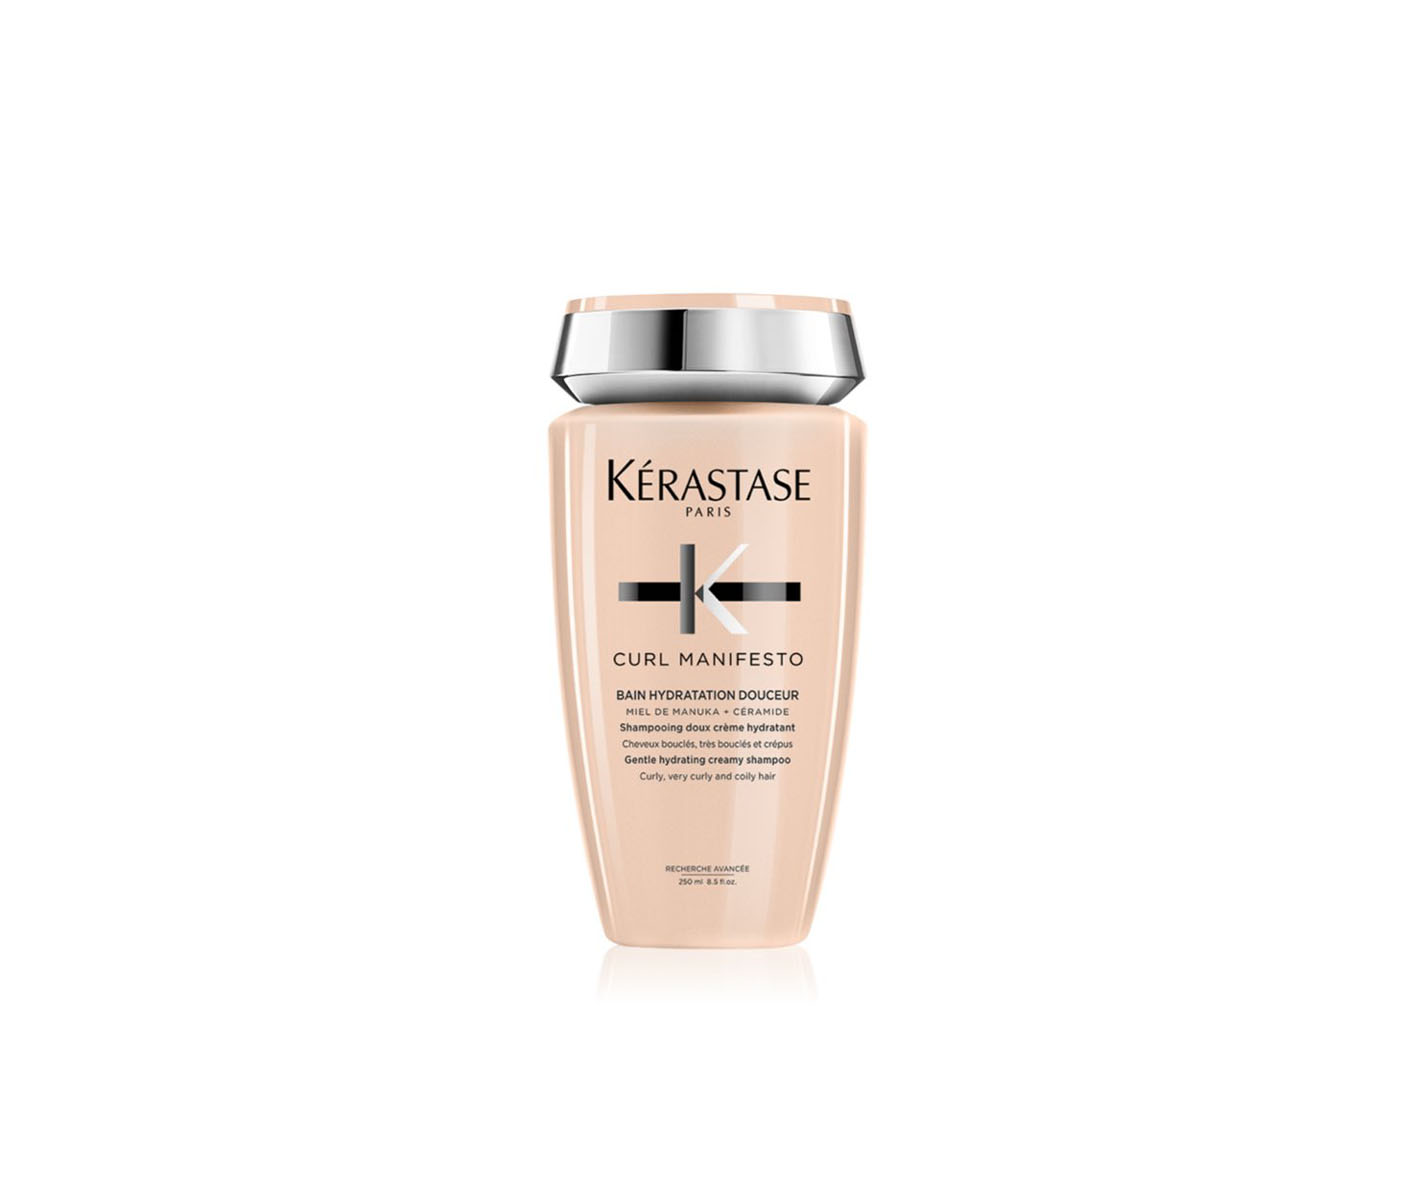 Kérastase, Curl Manifesto, Bain Hydratation Douceur, shampoo for curly hair